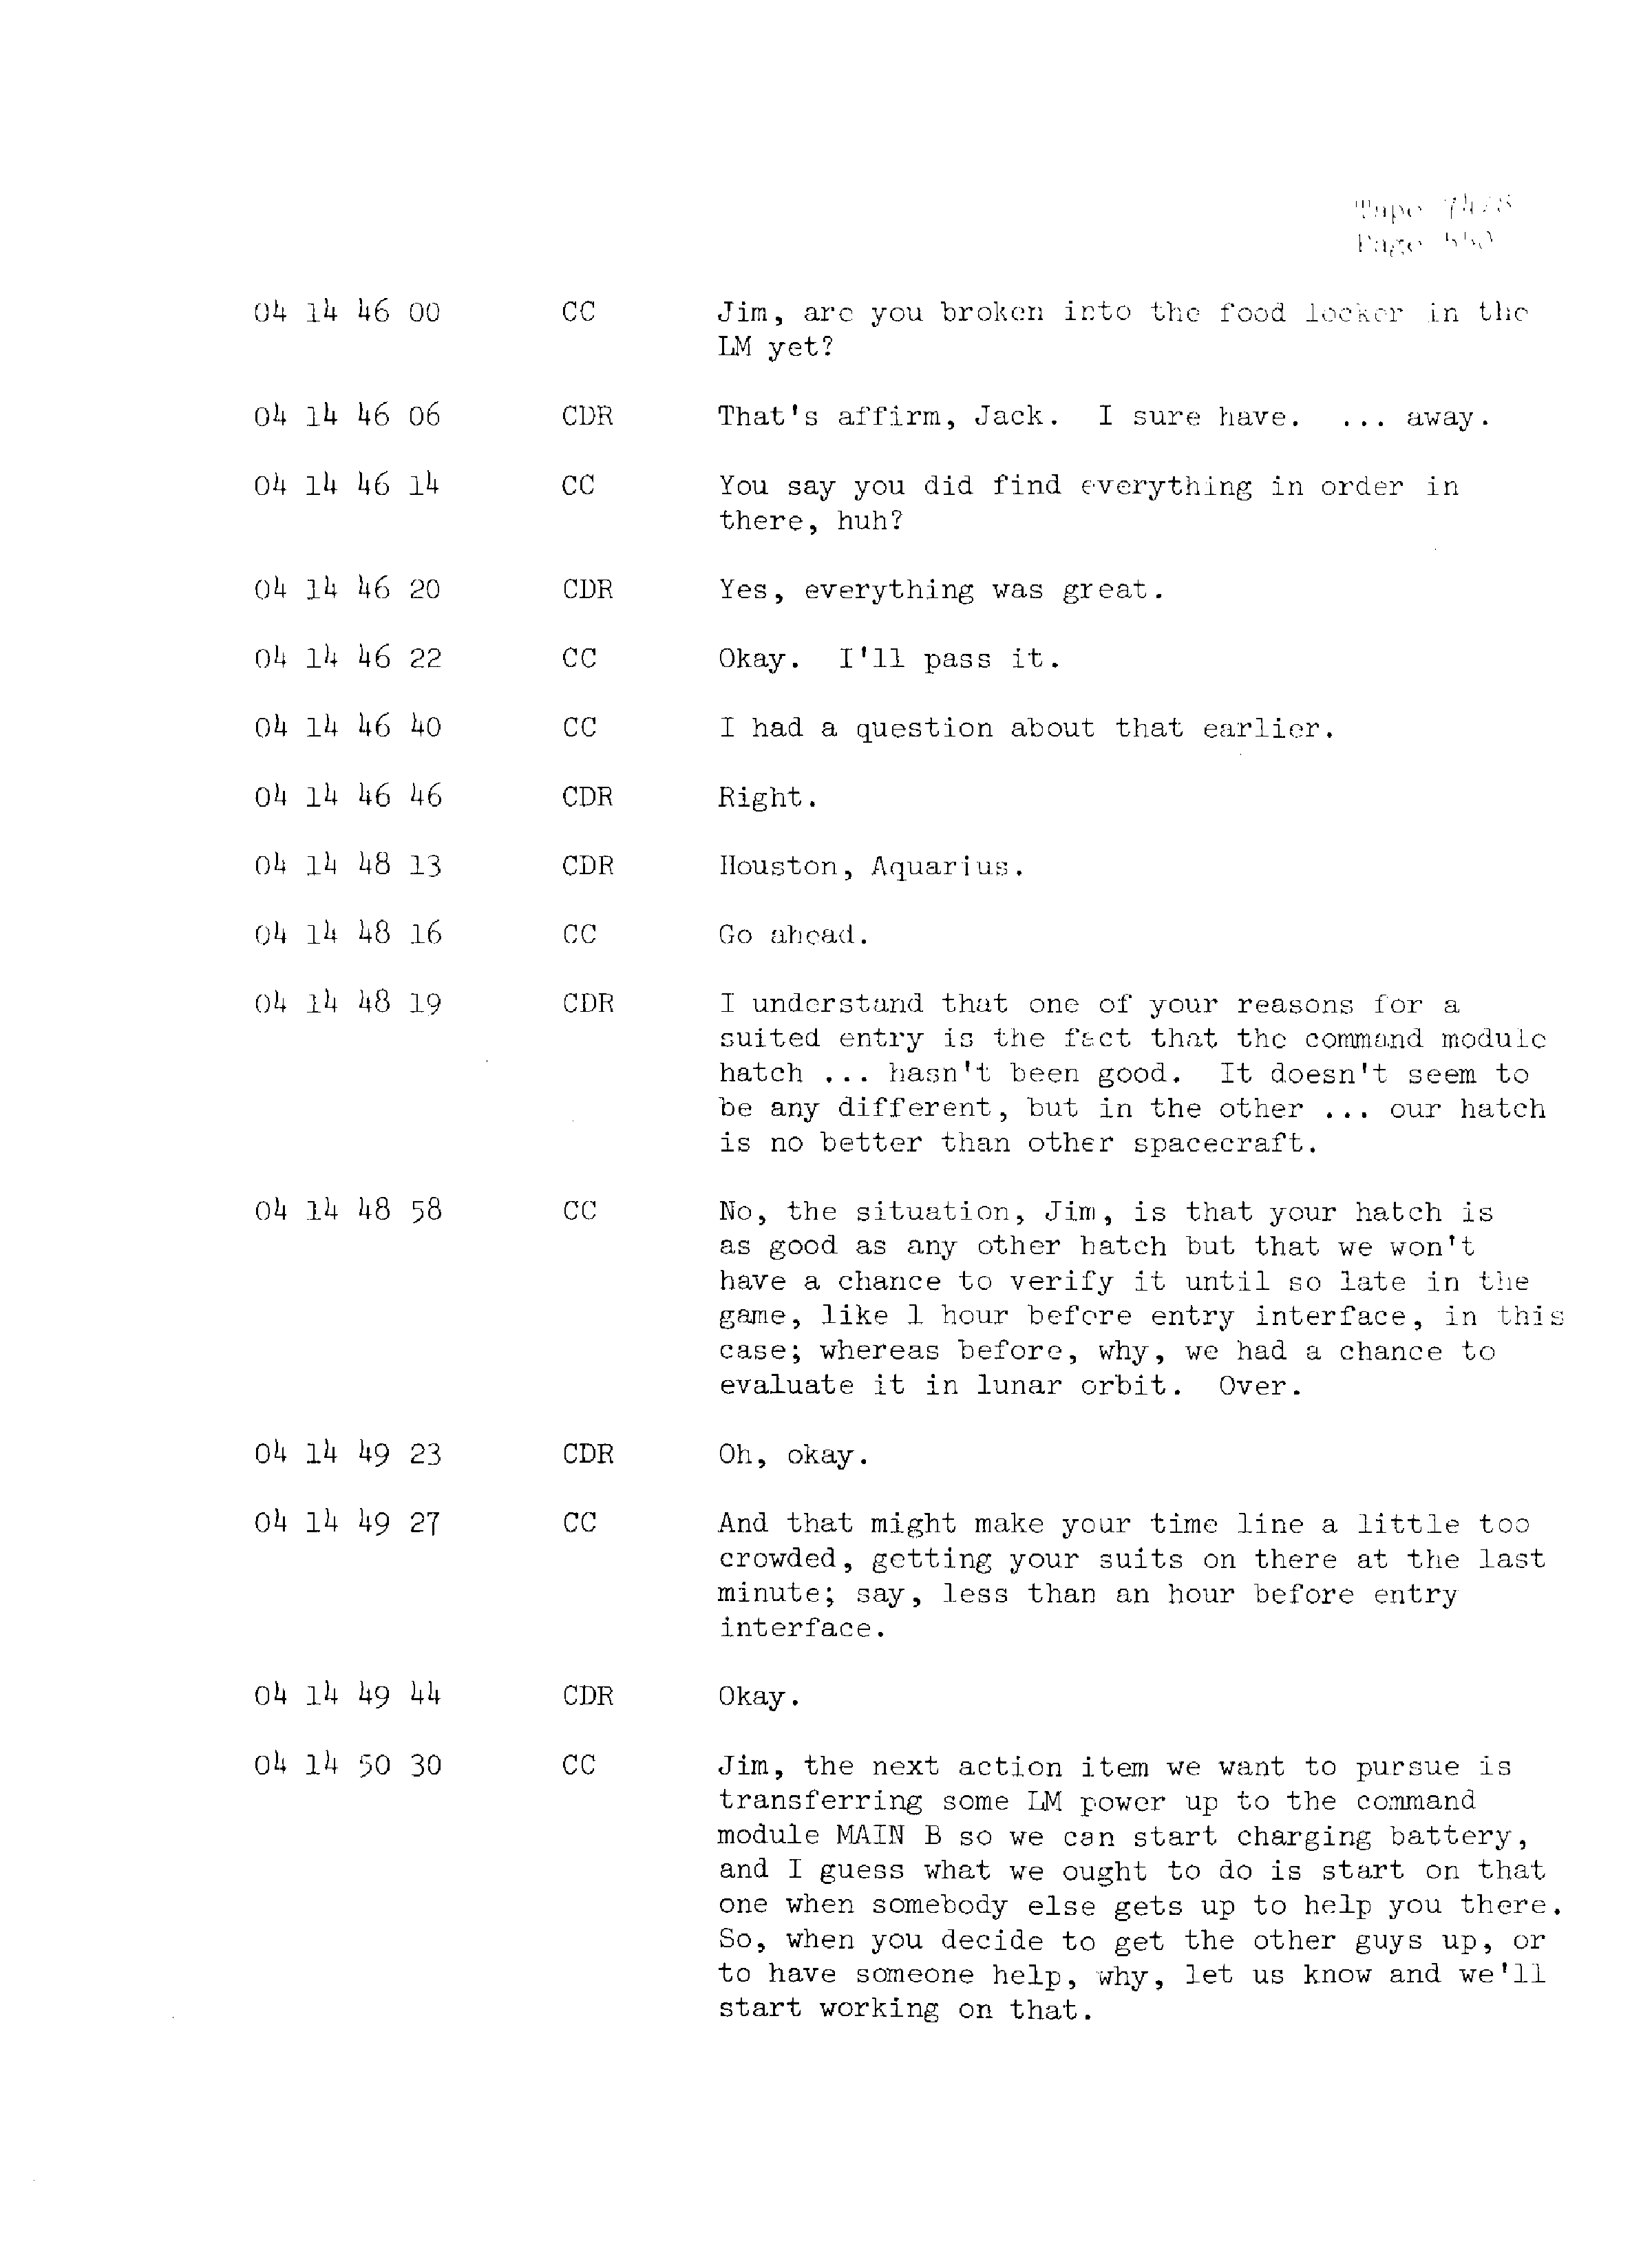 Page 557 of Apollo 13’s original transcript